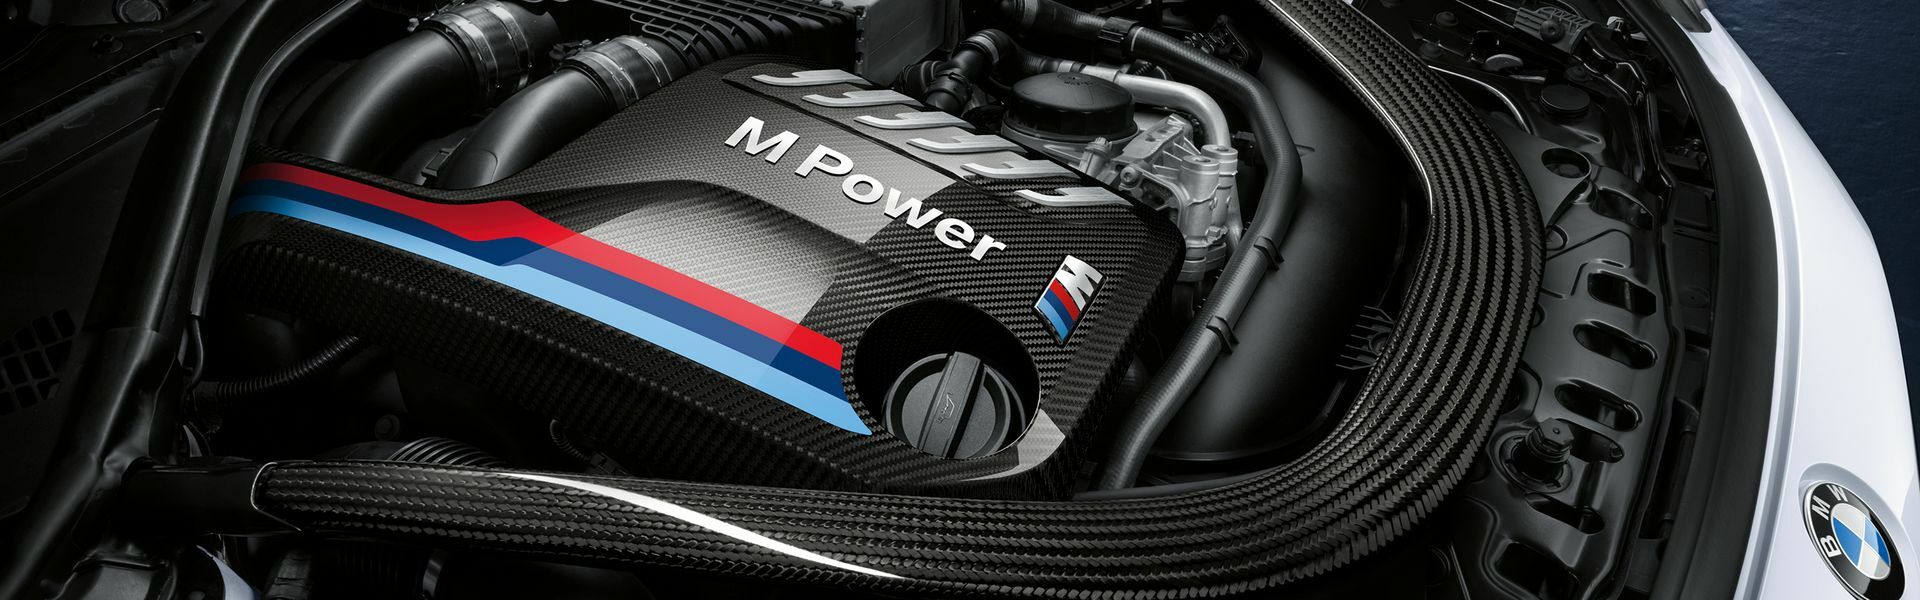 Zvýšení výkonu/ Softwarové úpravy/ Drobné performance díly pro automobil BMW X6M F86